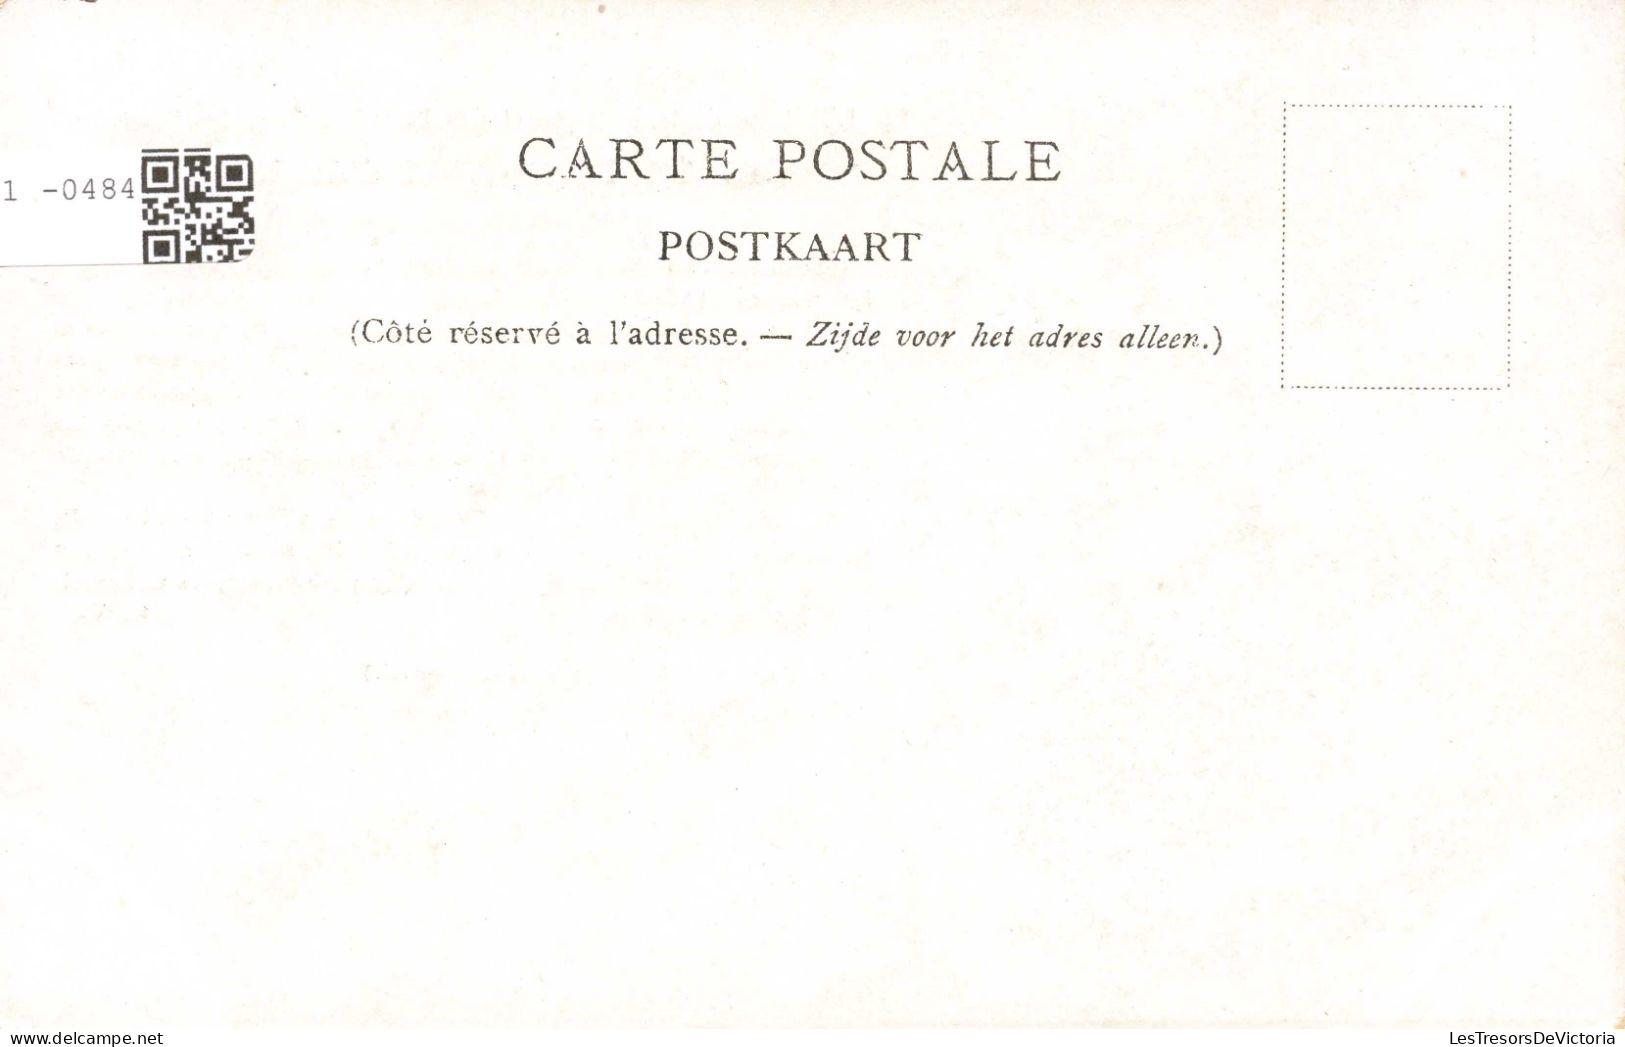 CELEBRITES - Personnages Historiques - Charles 1er - Roi D'Angleterre - Carte Postale Ancienne - Politieke En Militaire Mannen